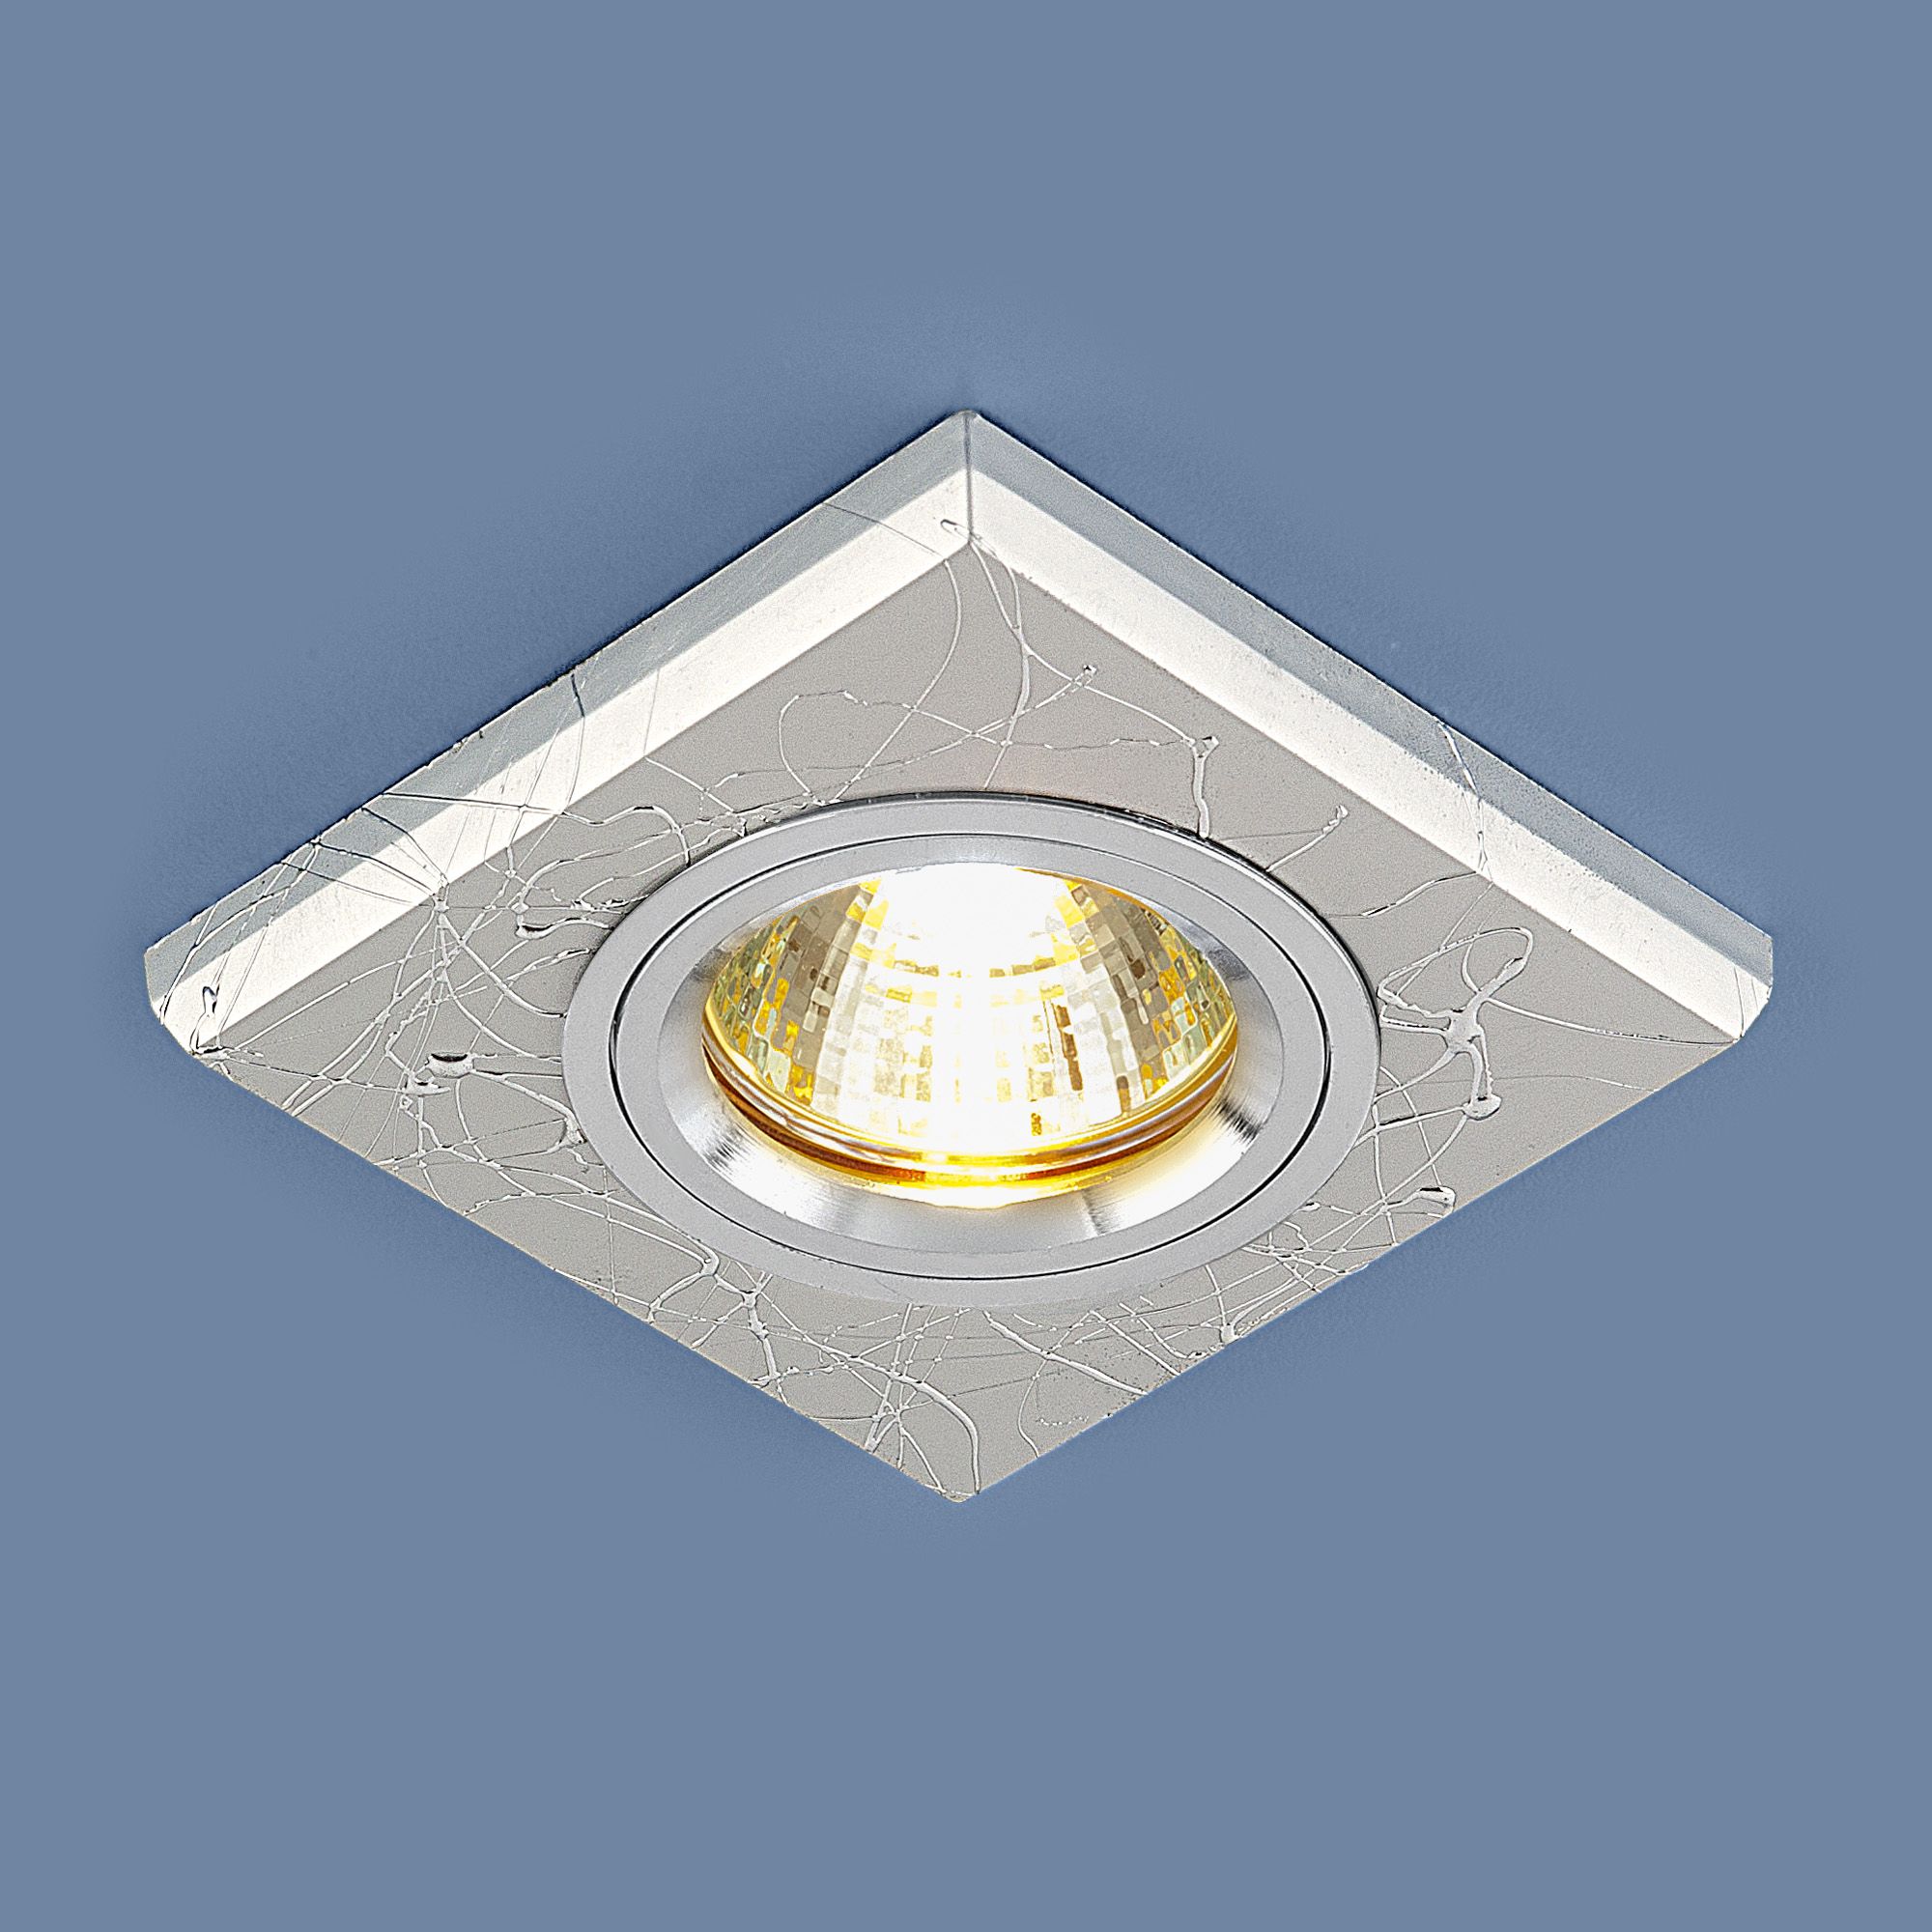 Встраиваемый точечный светильник 2080 MR16 SL серебро